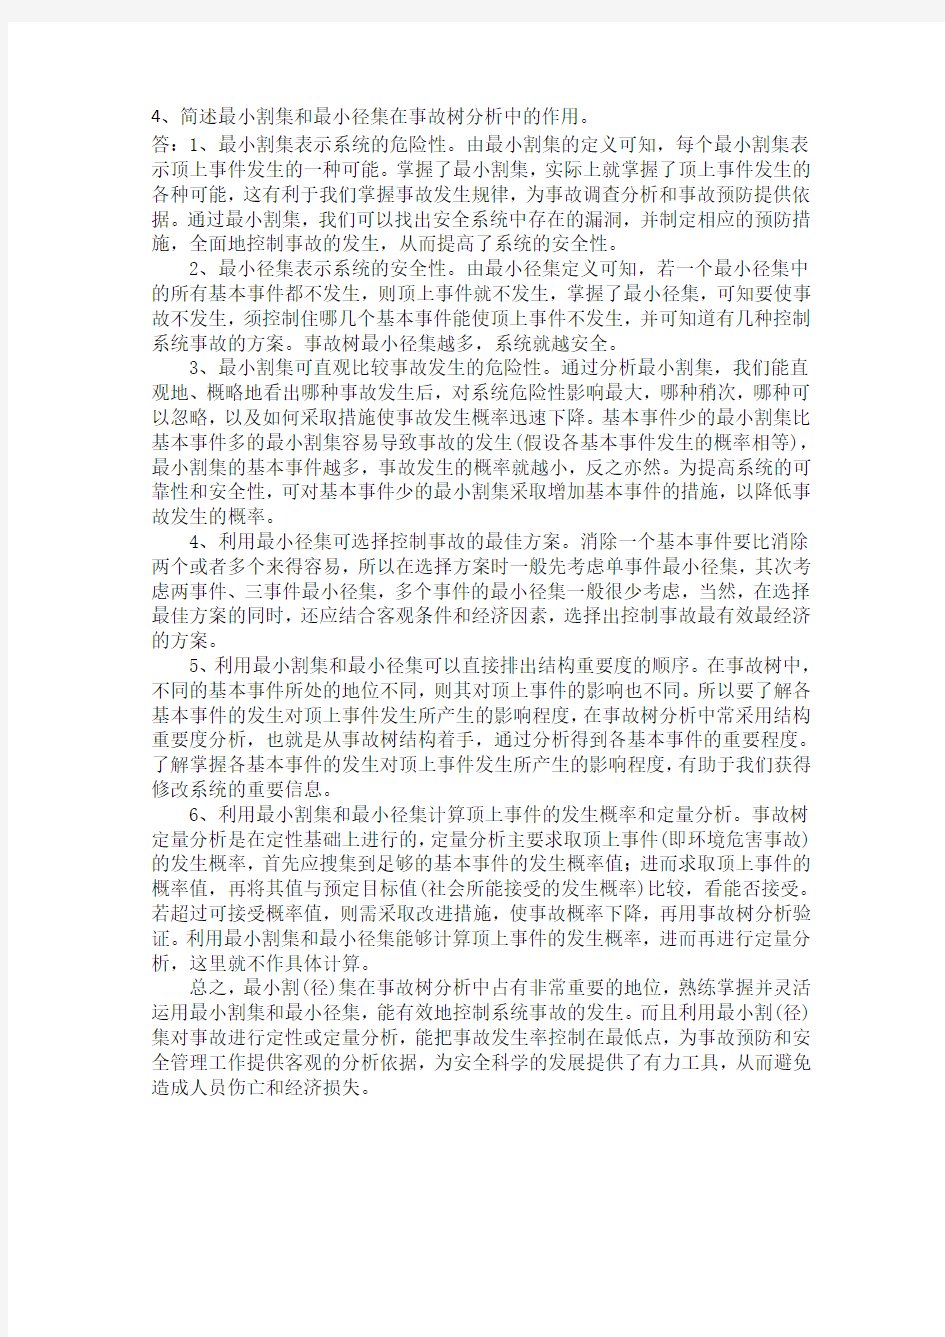 中国石油大学(北京)远程教育学院2015年春季期末考试《安全系统工程》双号答案